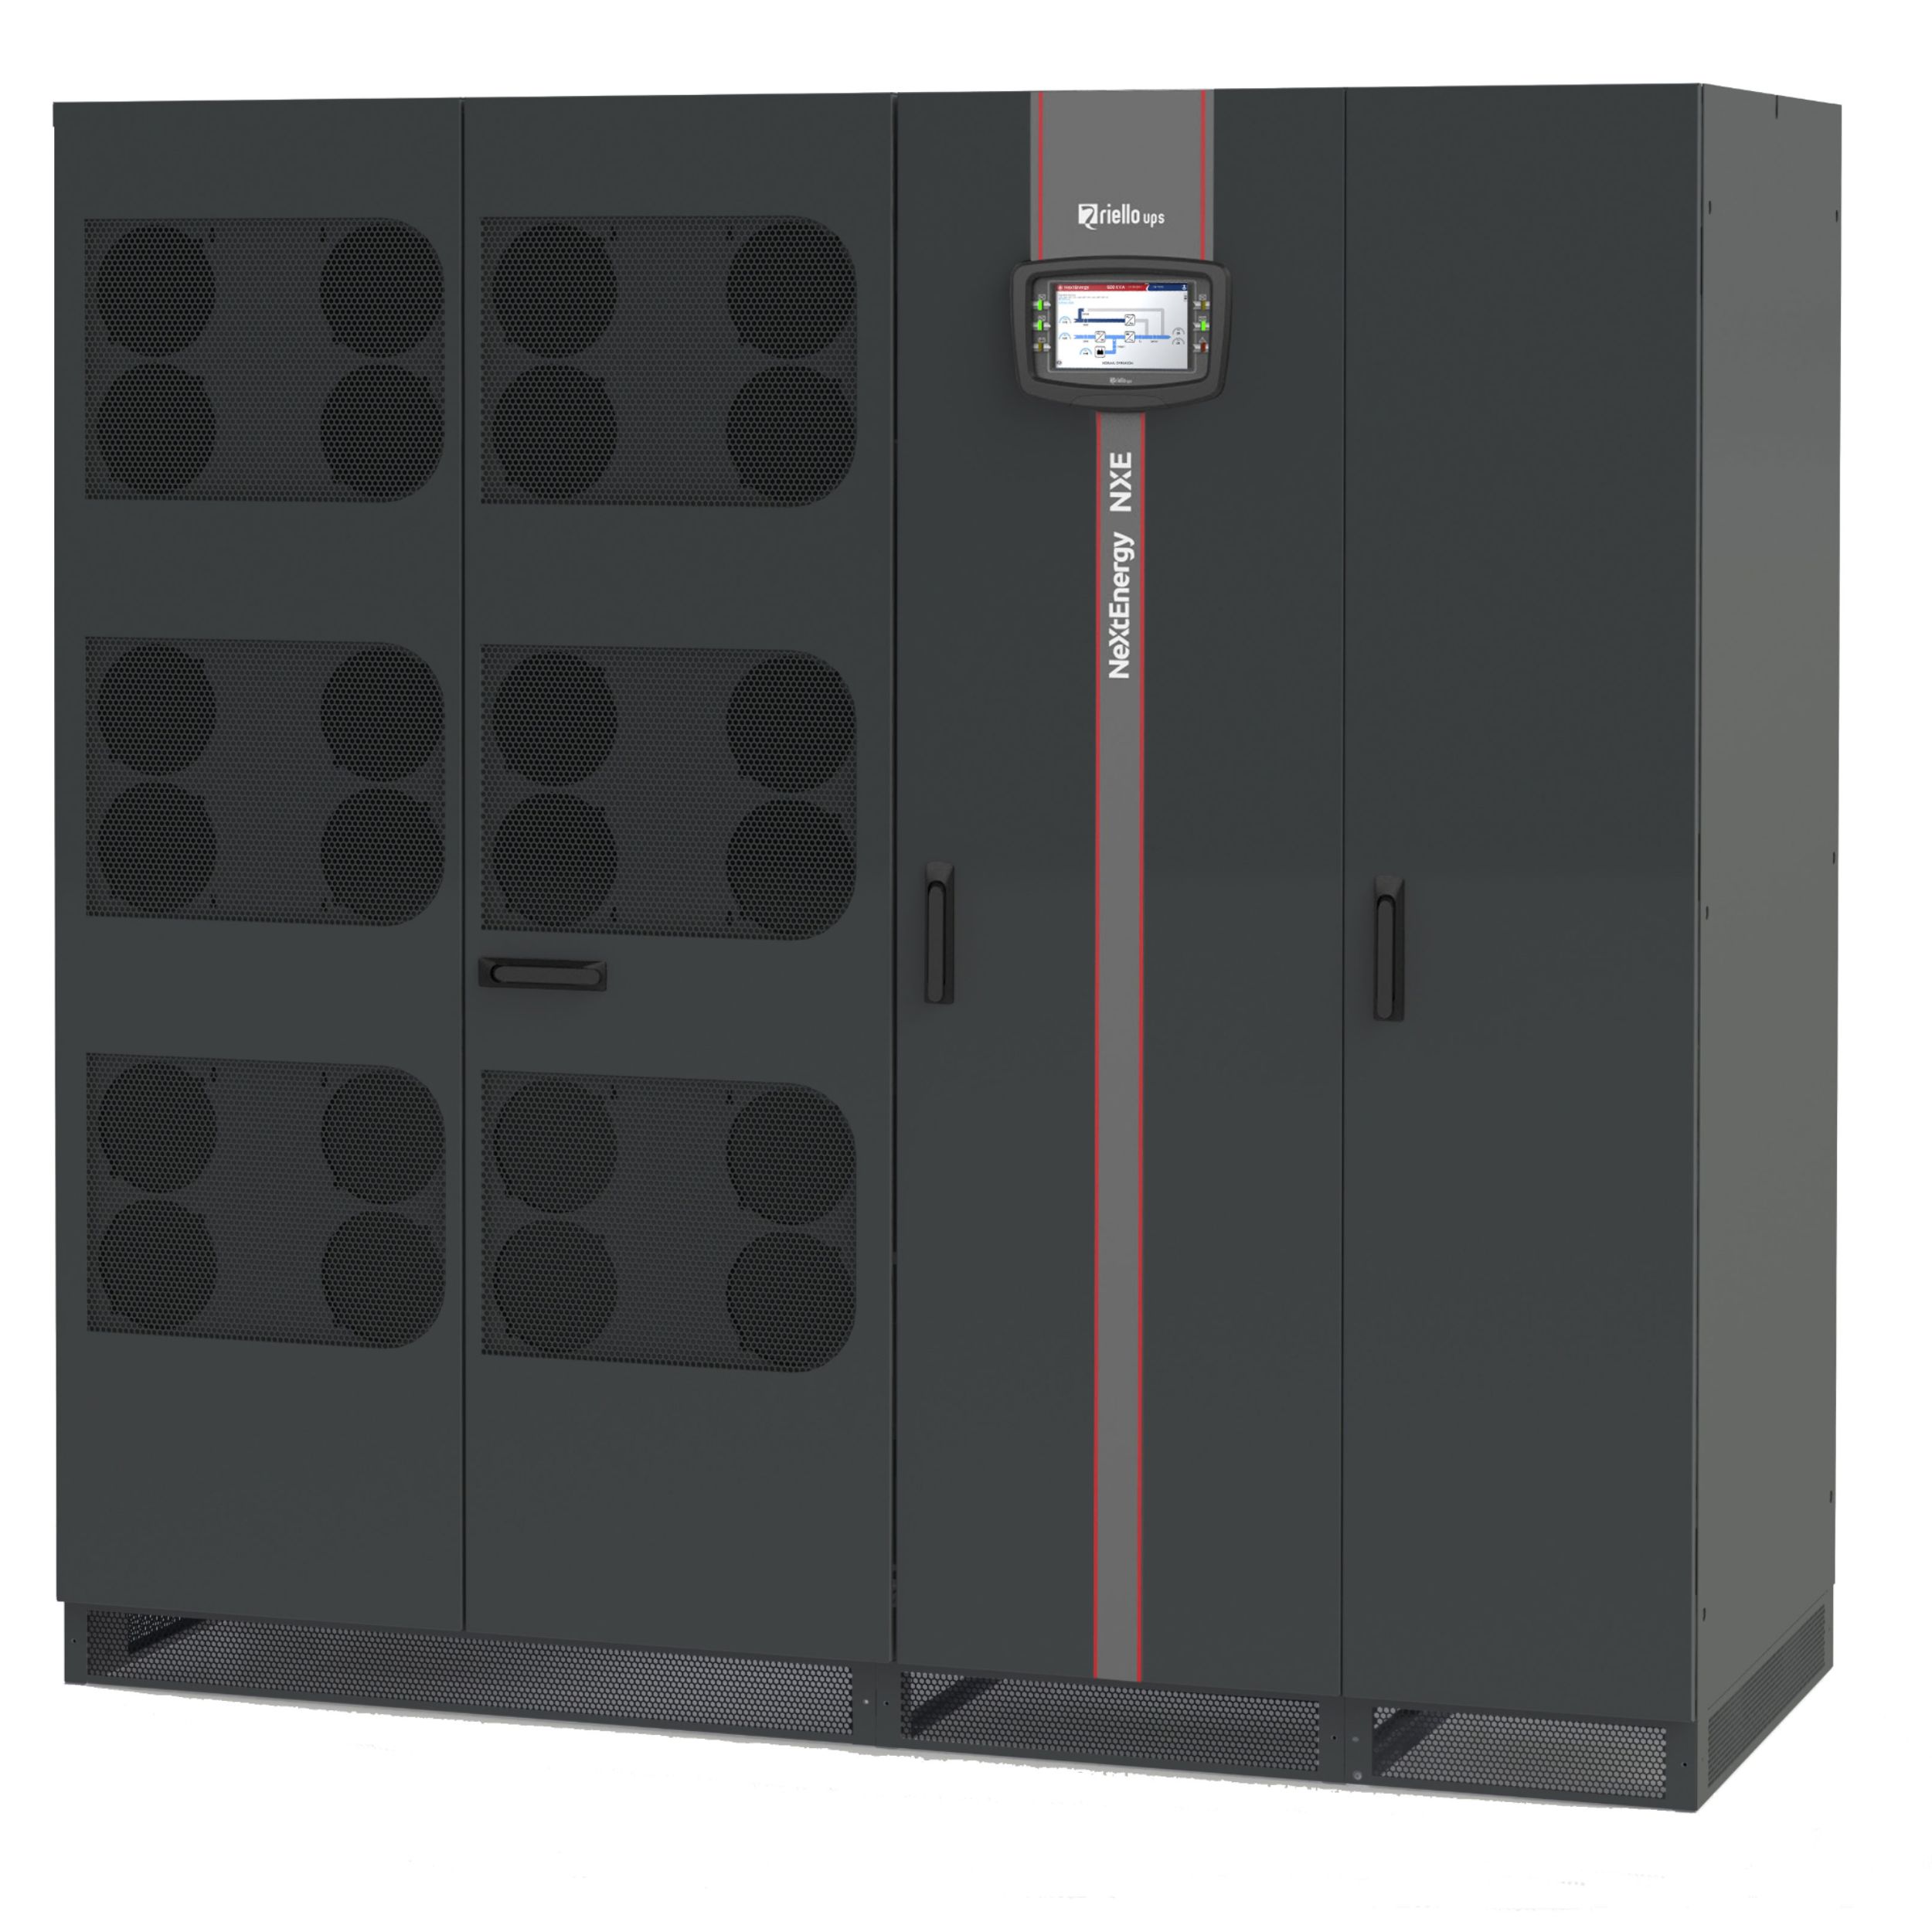 Riello UPS amplia la gamma NextEnergy con il nuovo modello da 600 kVA.